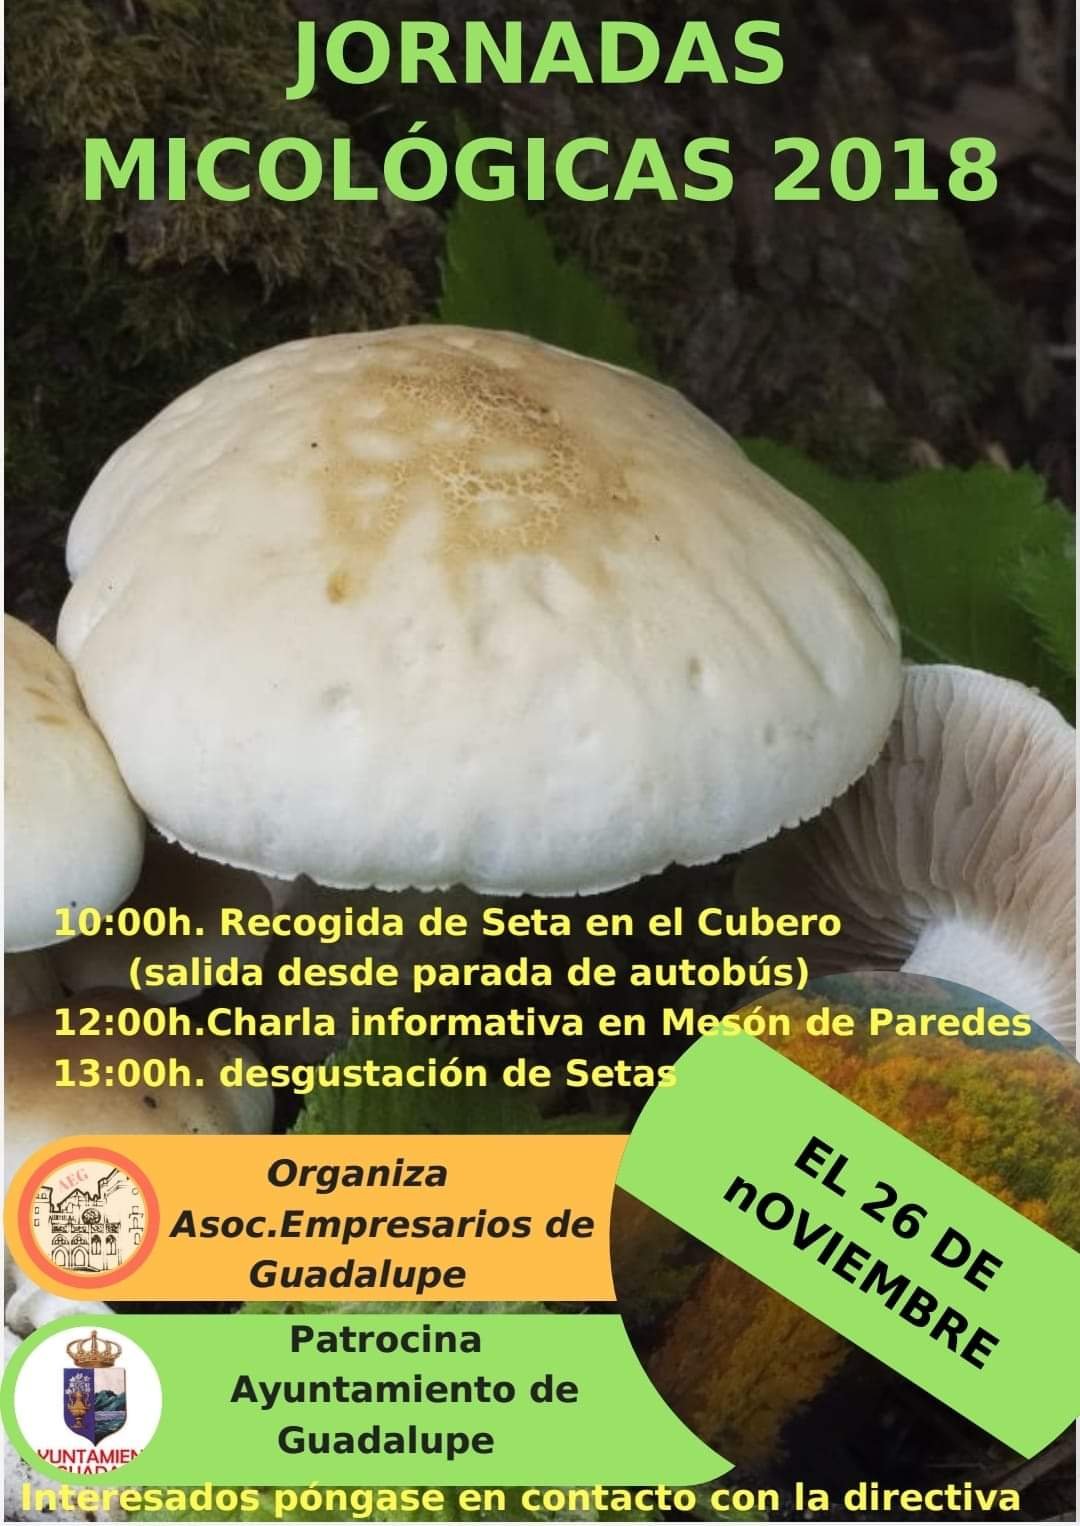 Jornadas micológicas 2018 - Guadalupe (Cáceres)